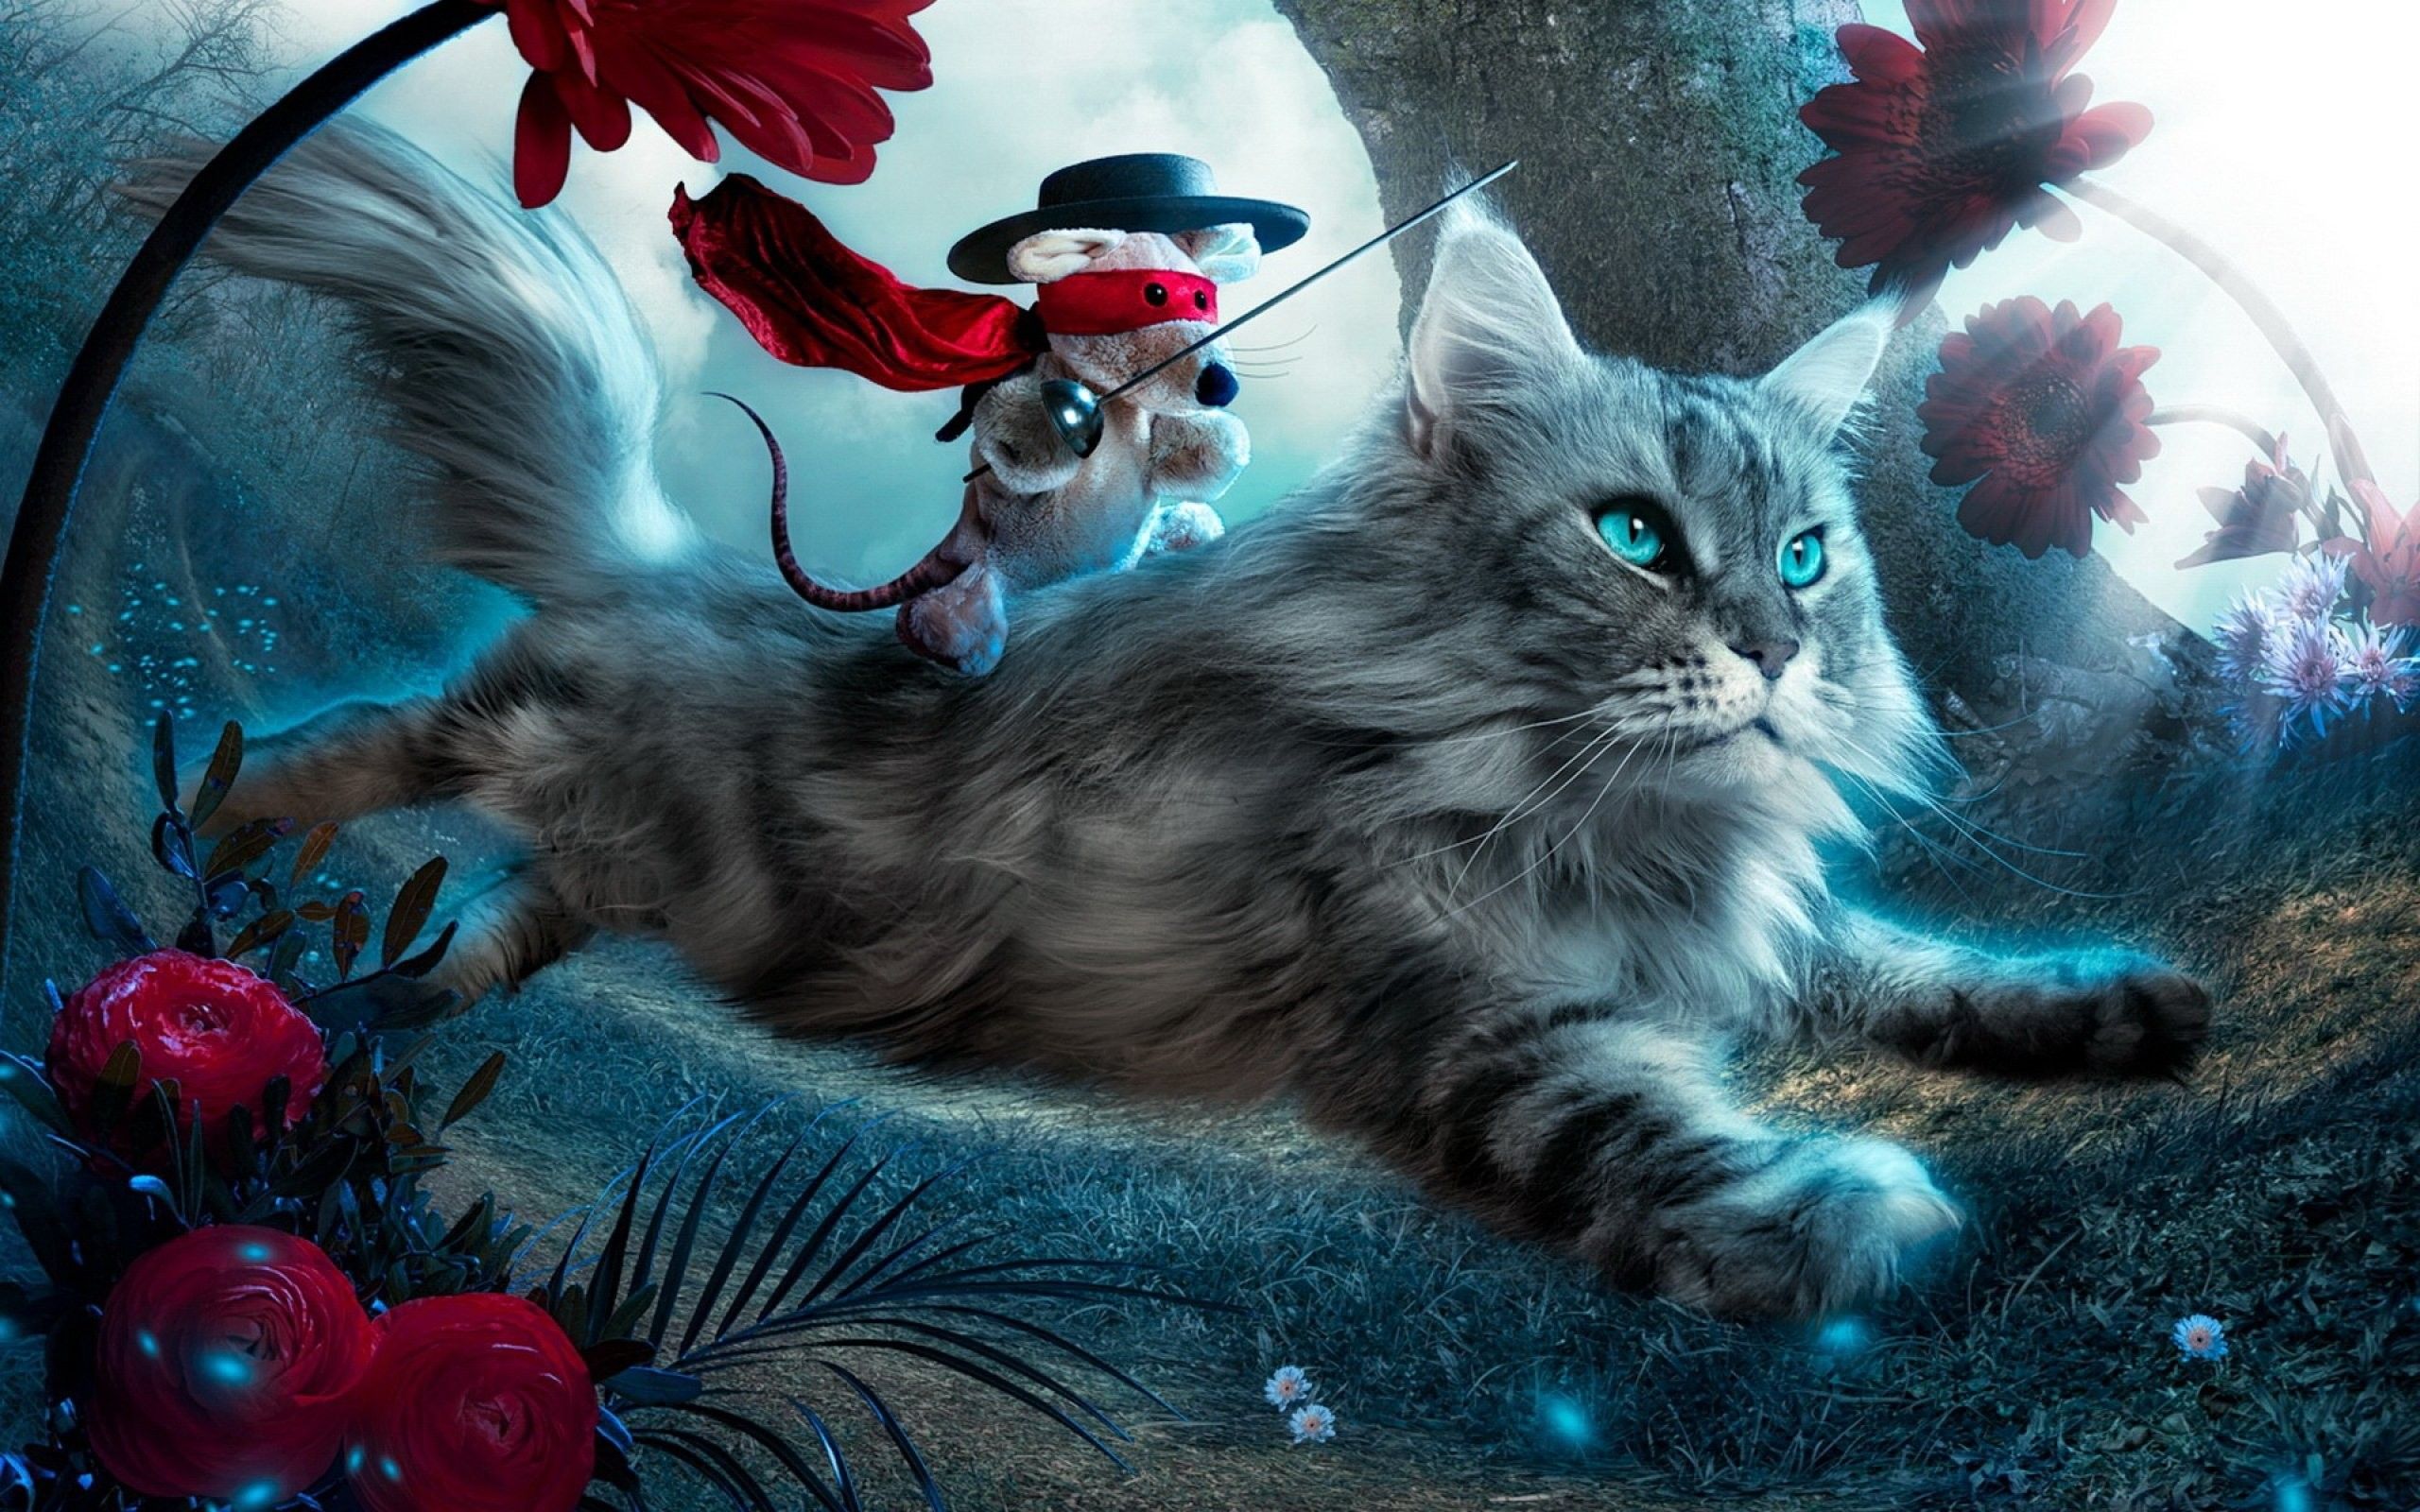 Desktop Image, Cat, fantasy, Cats, Beautiful, Art, Fantasy Wallpaper, Artistic, Artwork